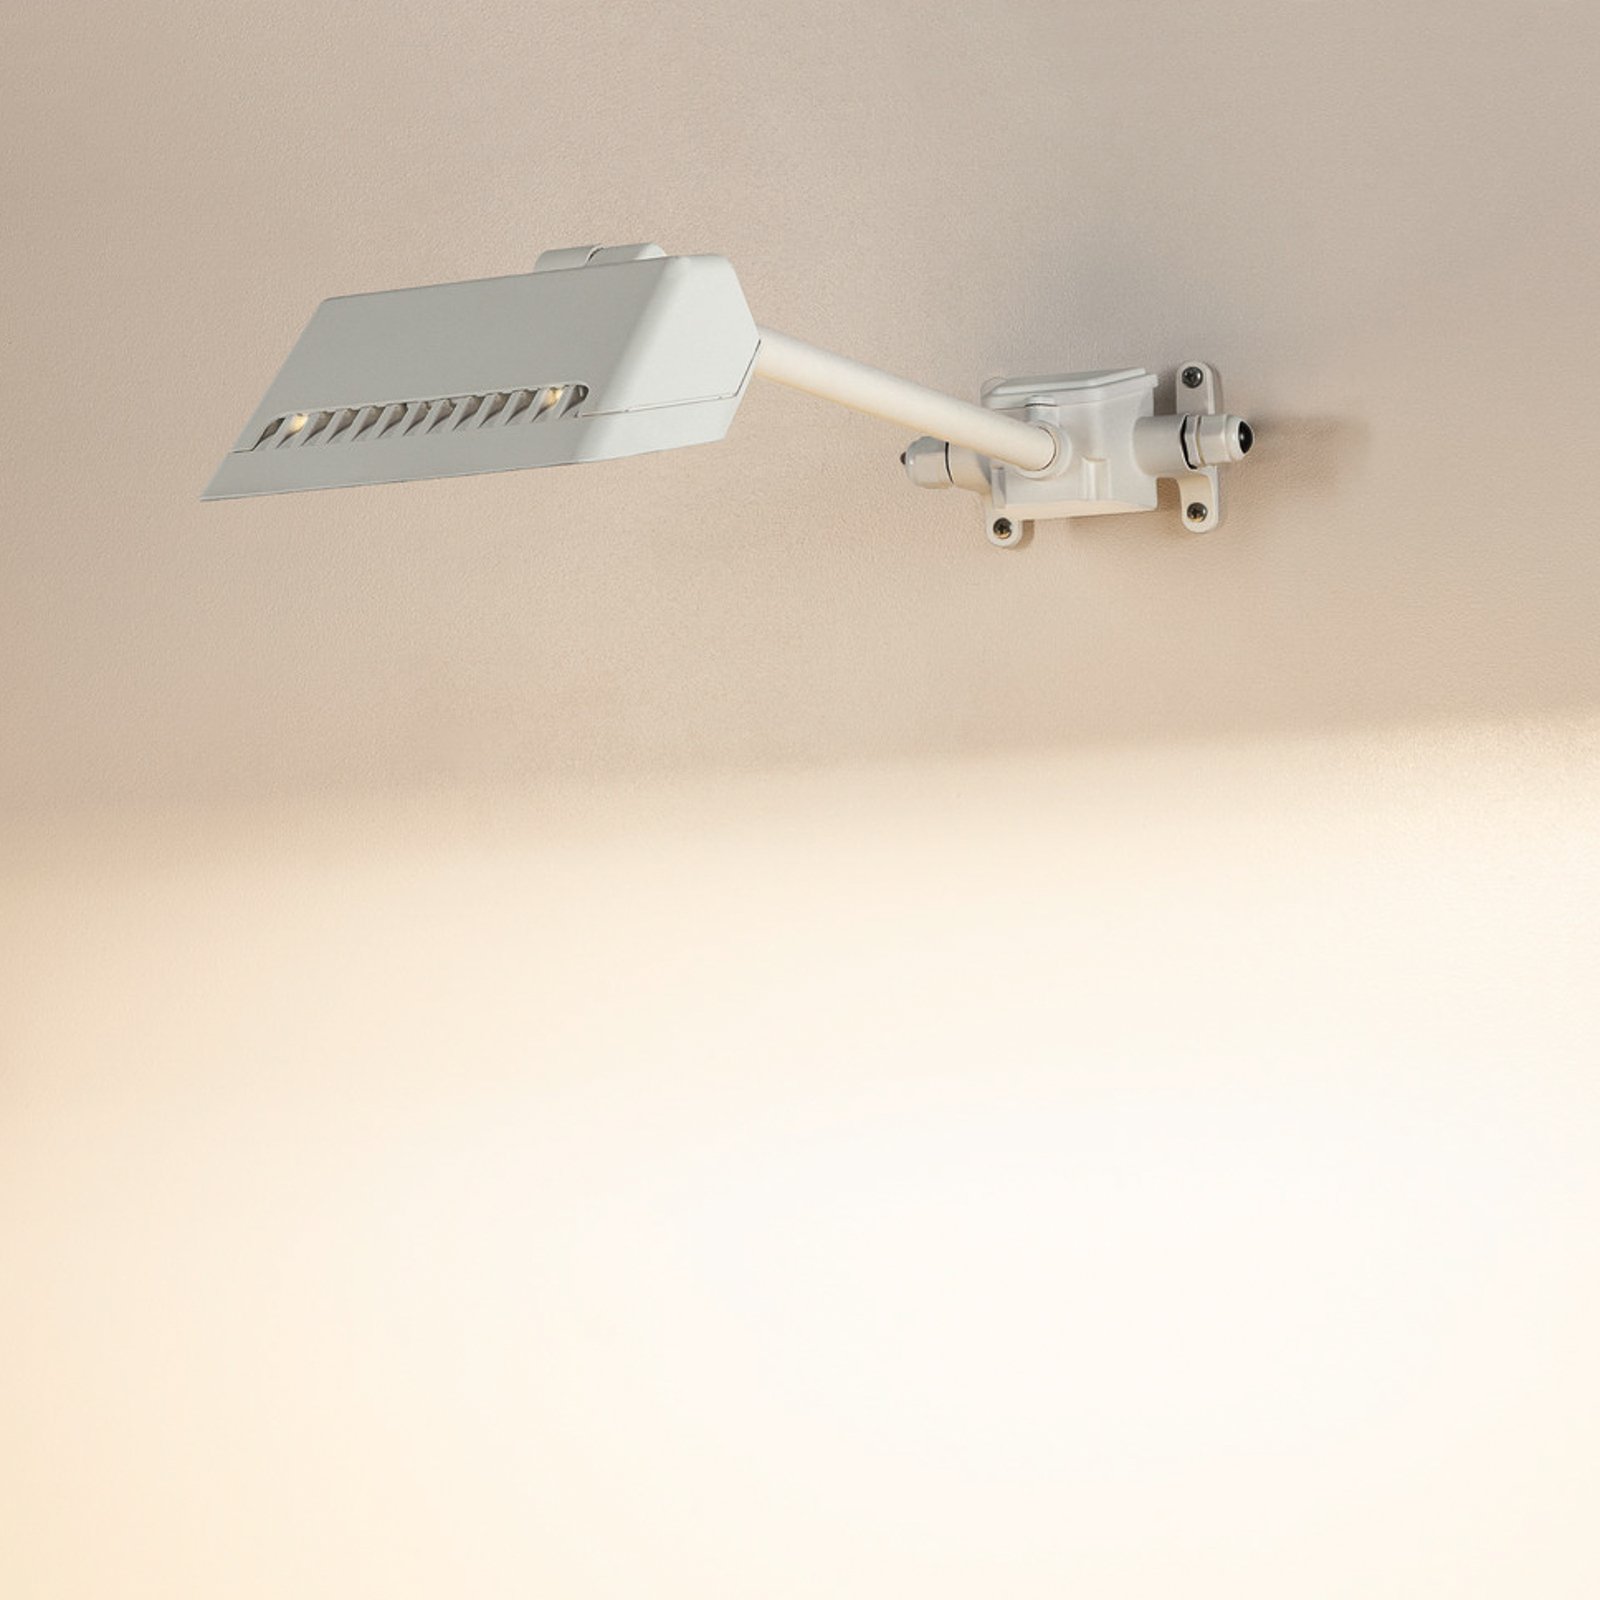 SLV LED wandlamp Today Pro, wit, aluminium, lengte 66,6 cm